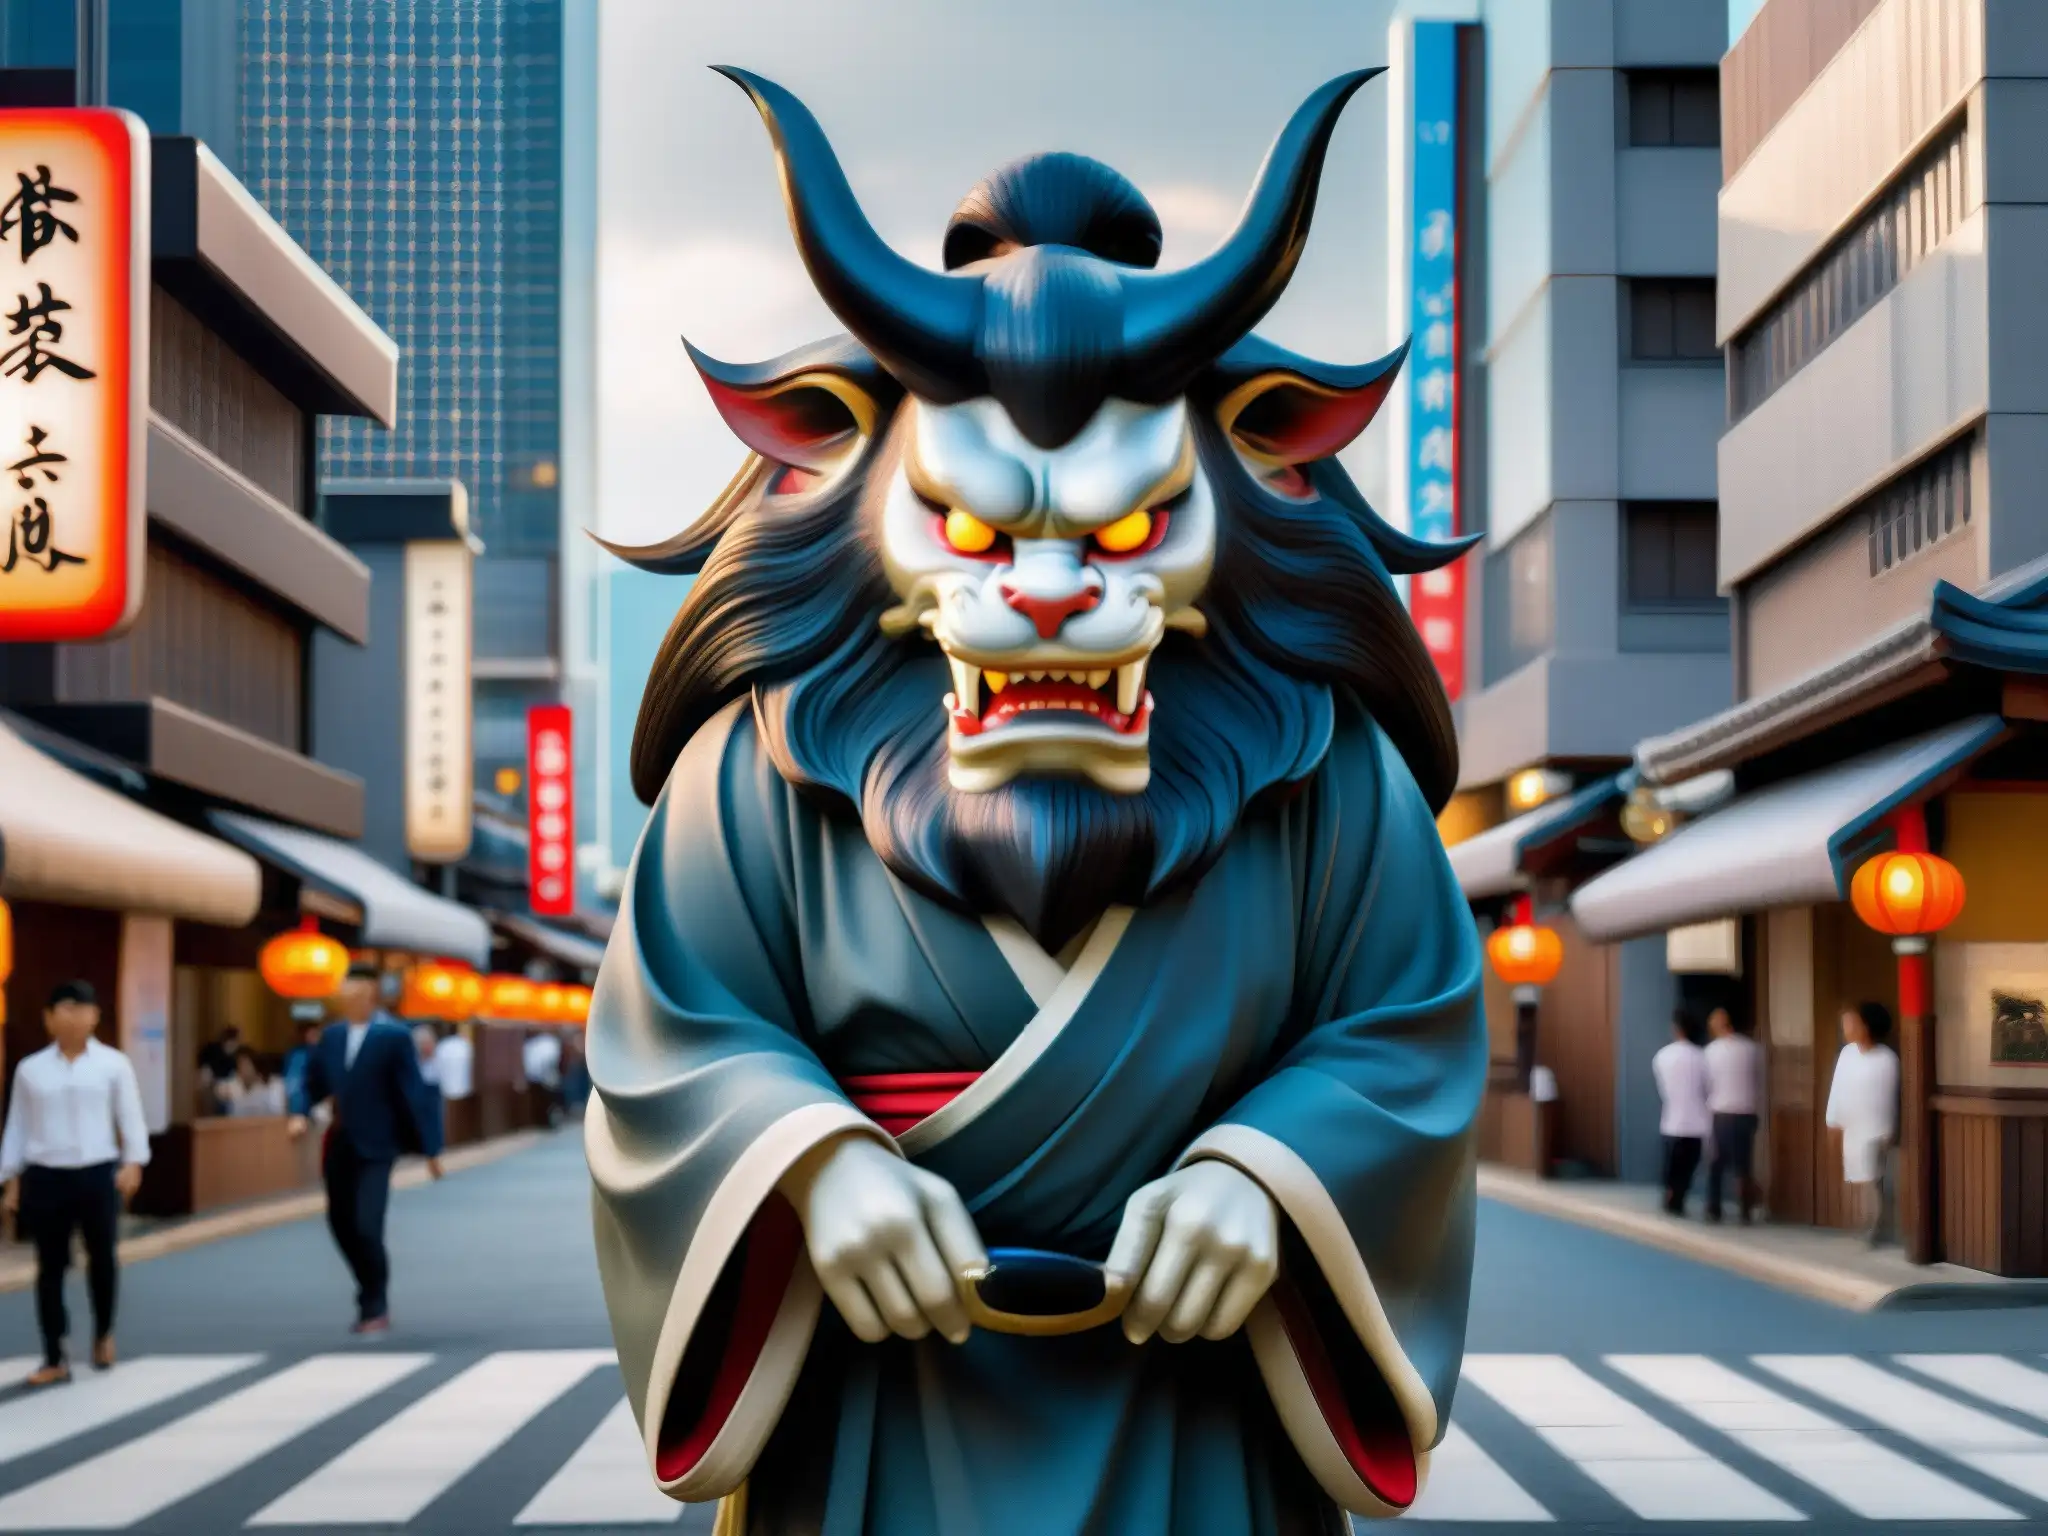 Un yōkai japonés tradicional cobra vida en la ciudad, resucitando mitos del folklore japonés con realidad aumentada